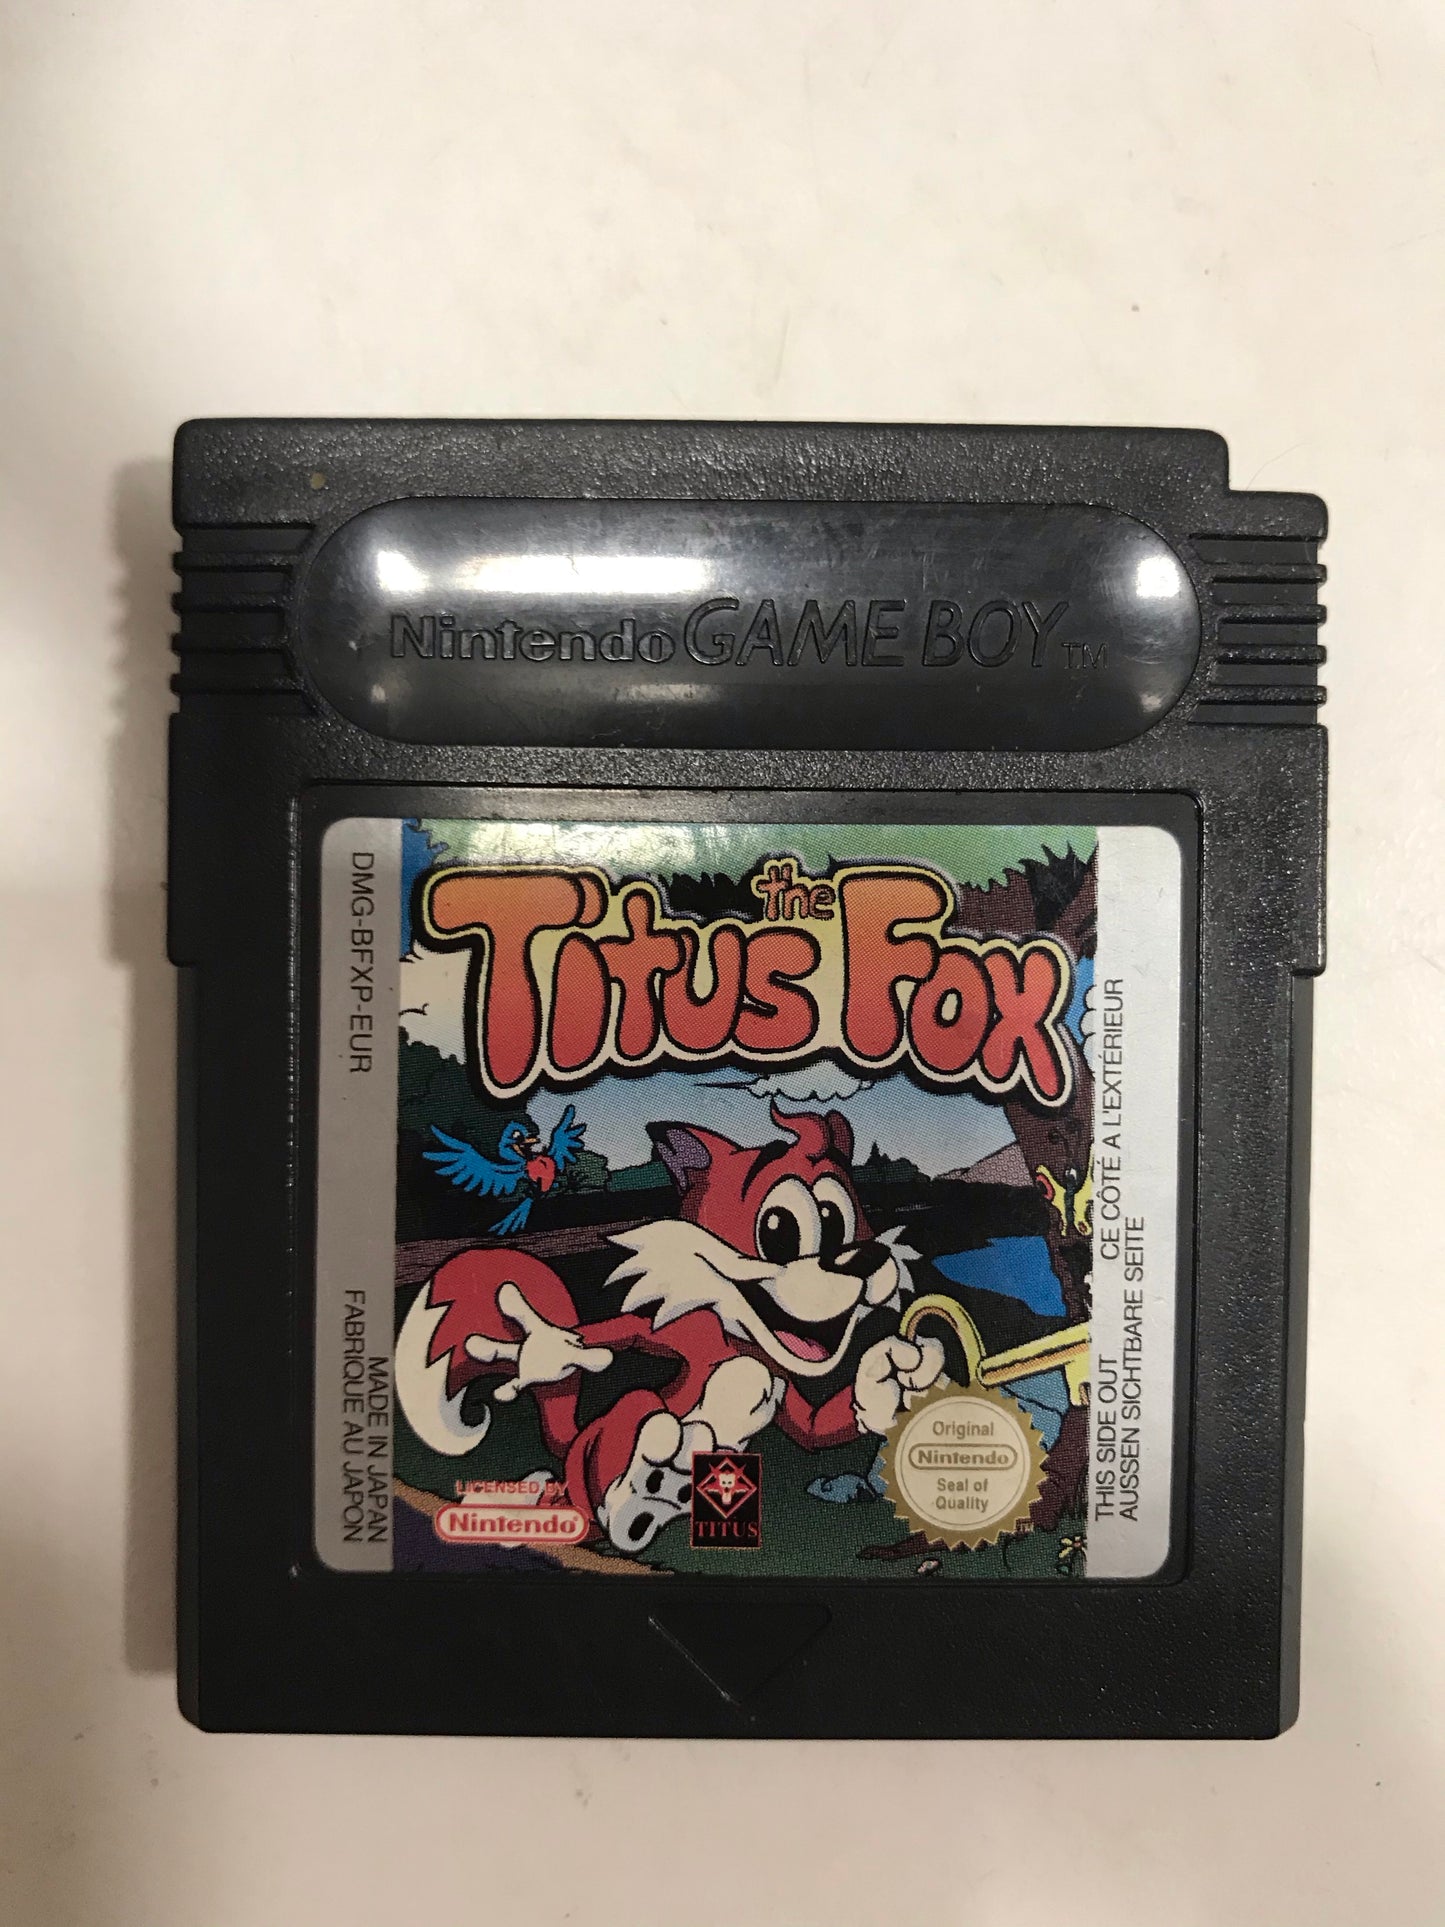 the titus fox EUR nintendo game boy color